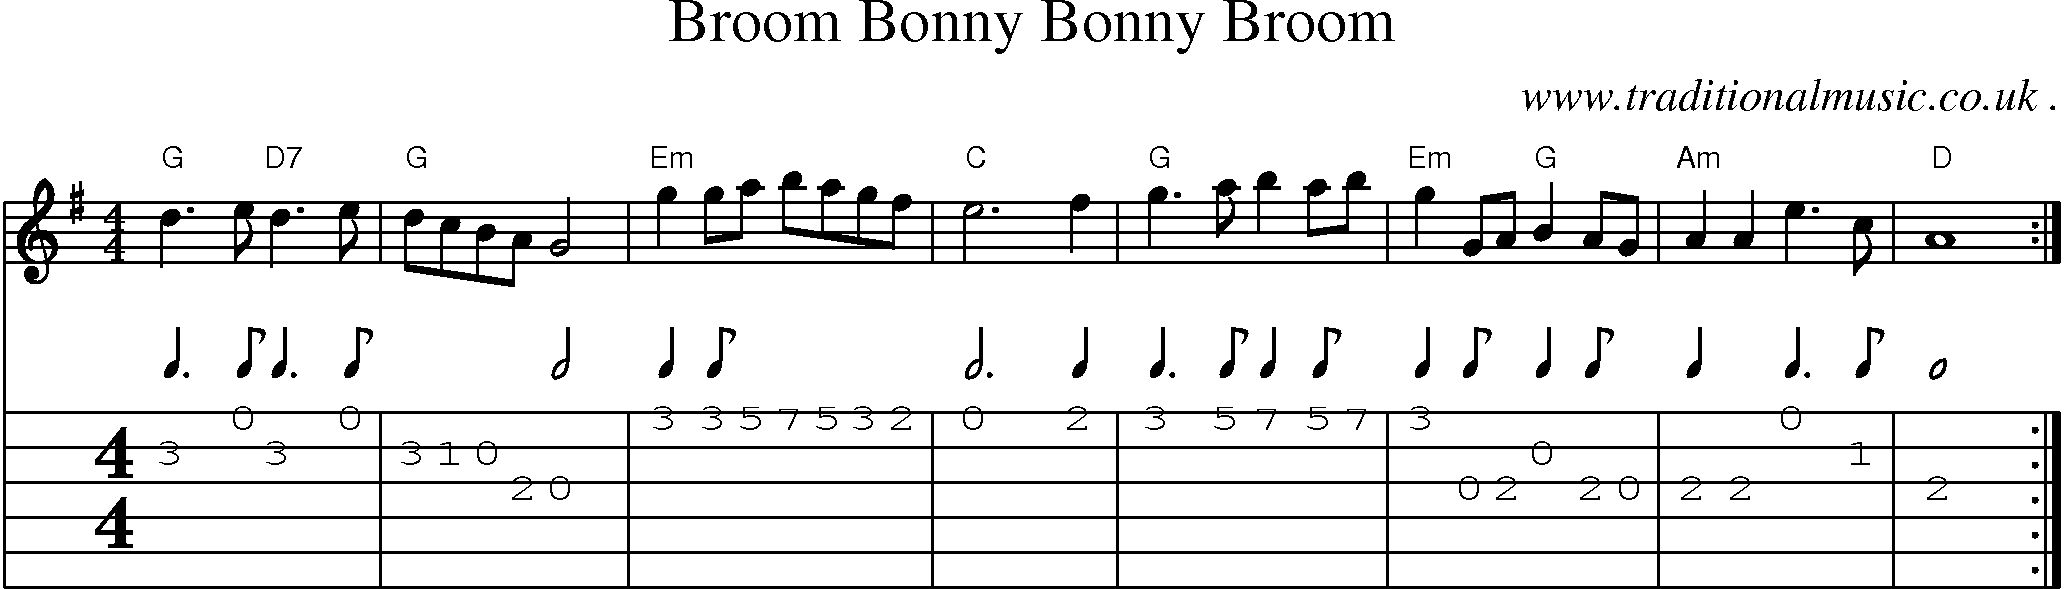 Sheet-Music and Guitar Tabs for Broom Bonny Bonny Broom